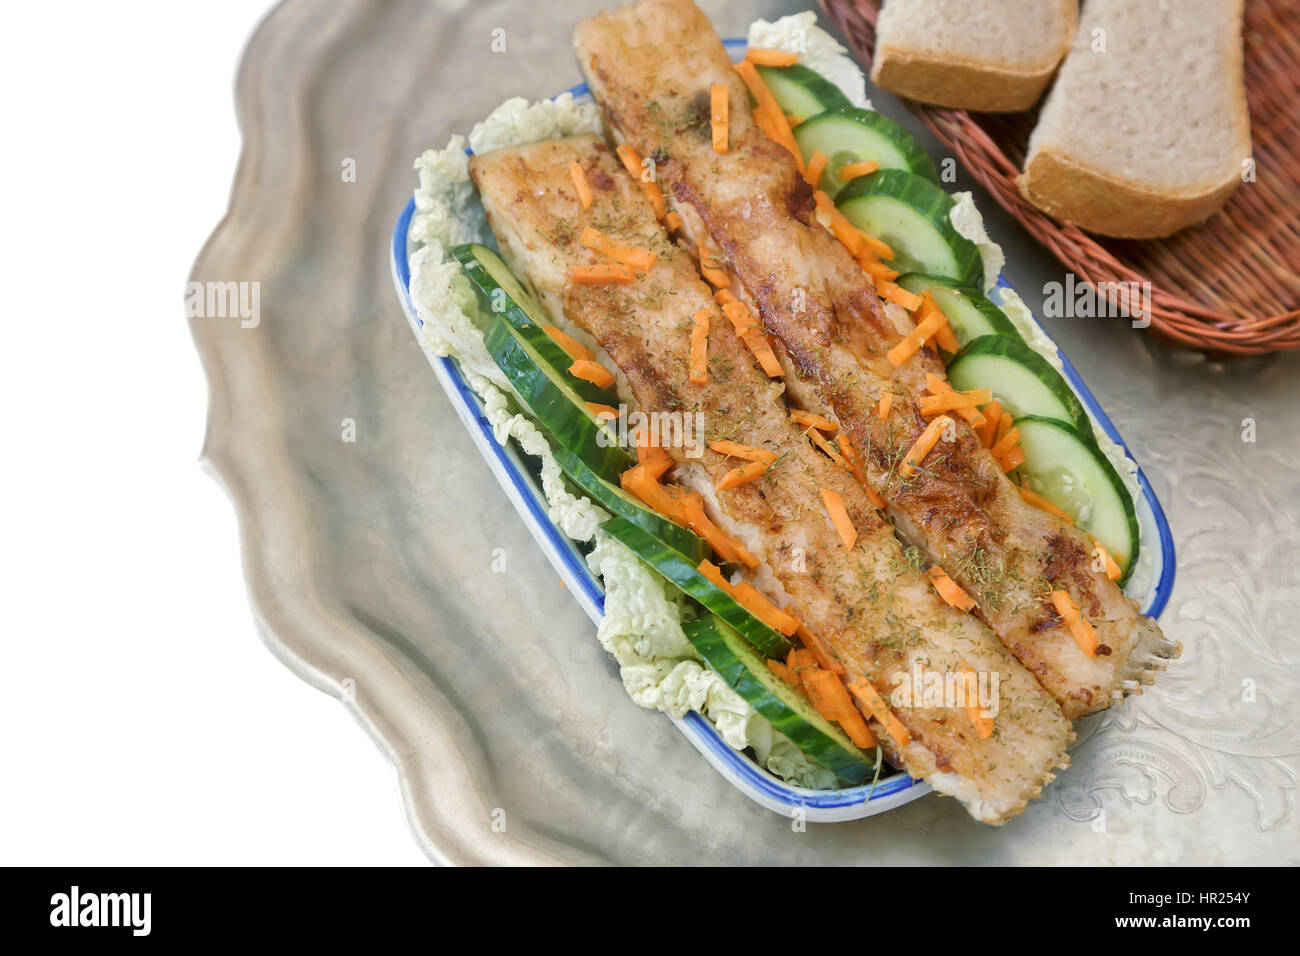 In un piatto di ceramica sul tavolo il pesce fritto con lattuga e cetriolo.  Piatti a base di pesce è su un vassoio di metallo Foto stock - Alamy